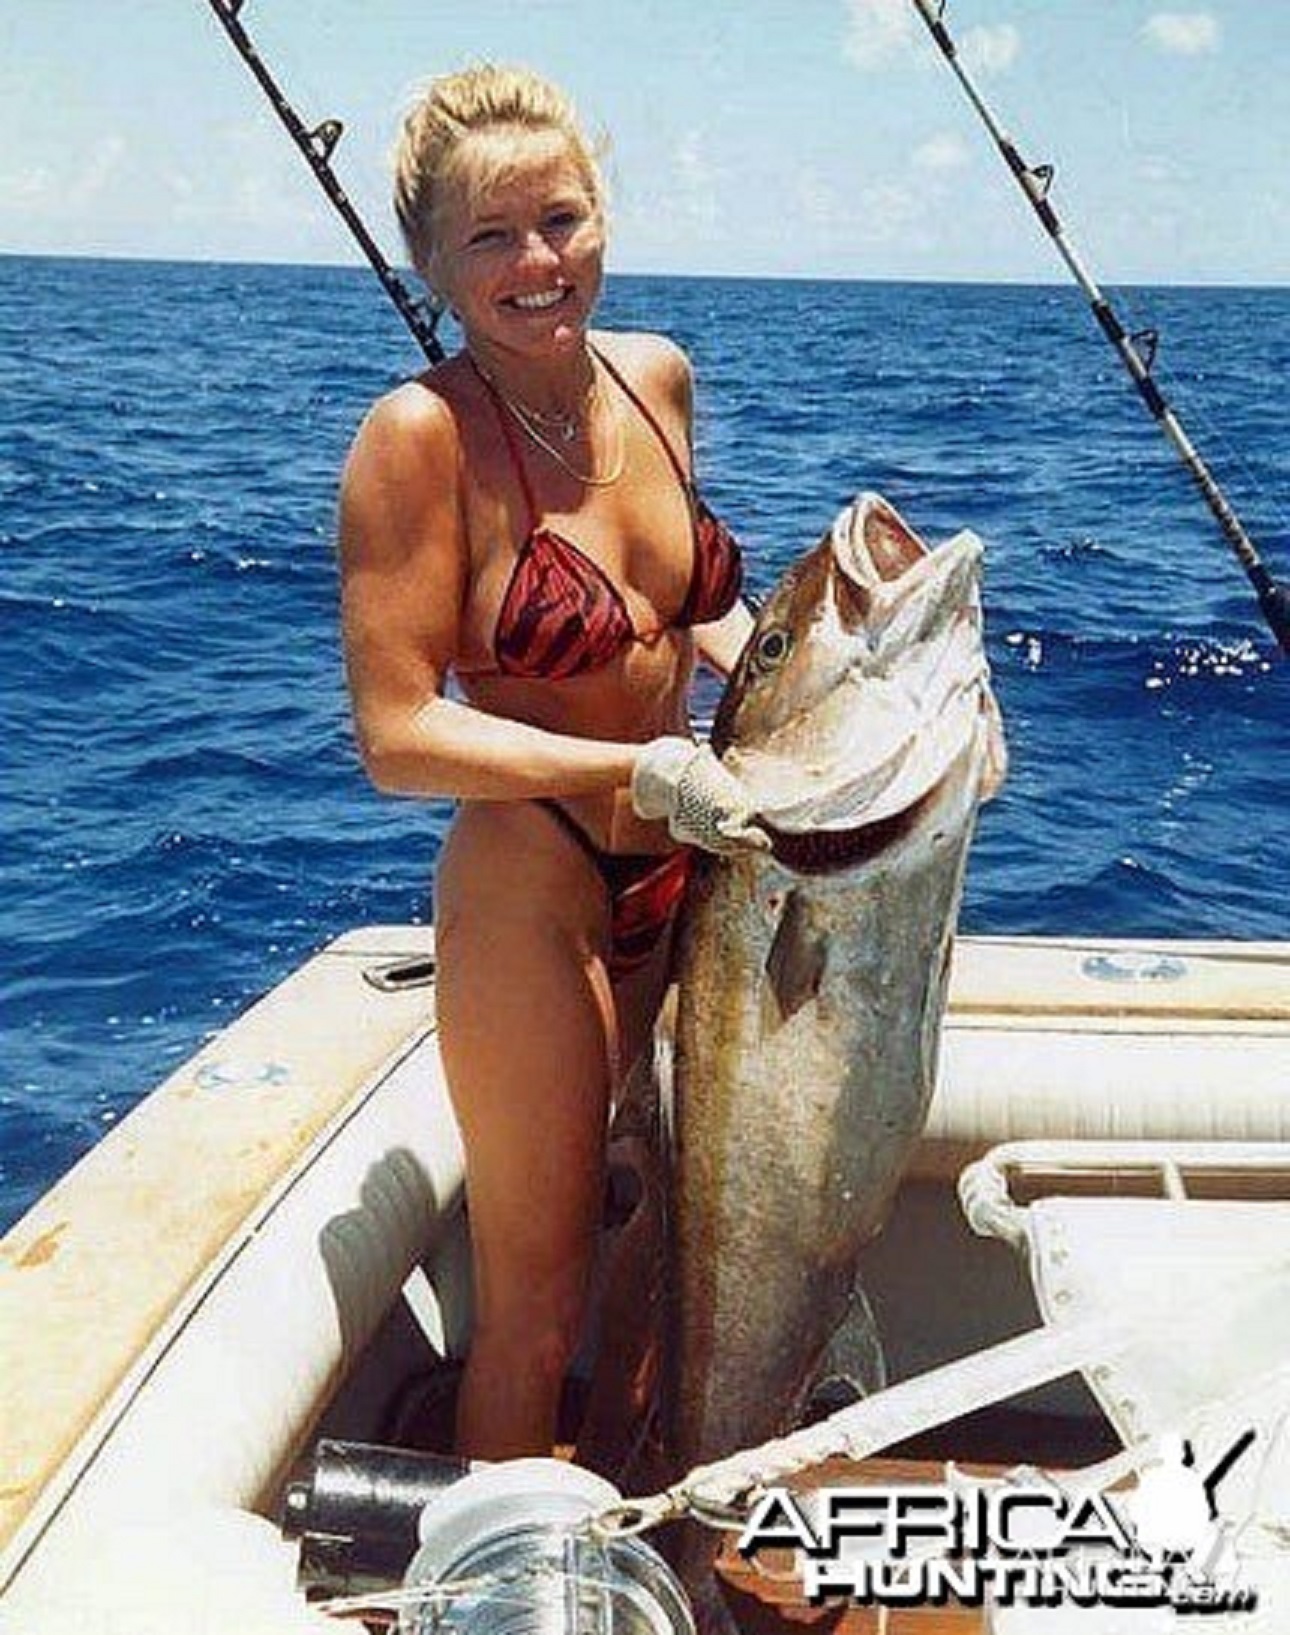 Горячая рыбалка с девушками. Американцы вот не стесняются (18+) -  Охотники.ру